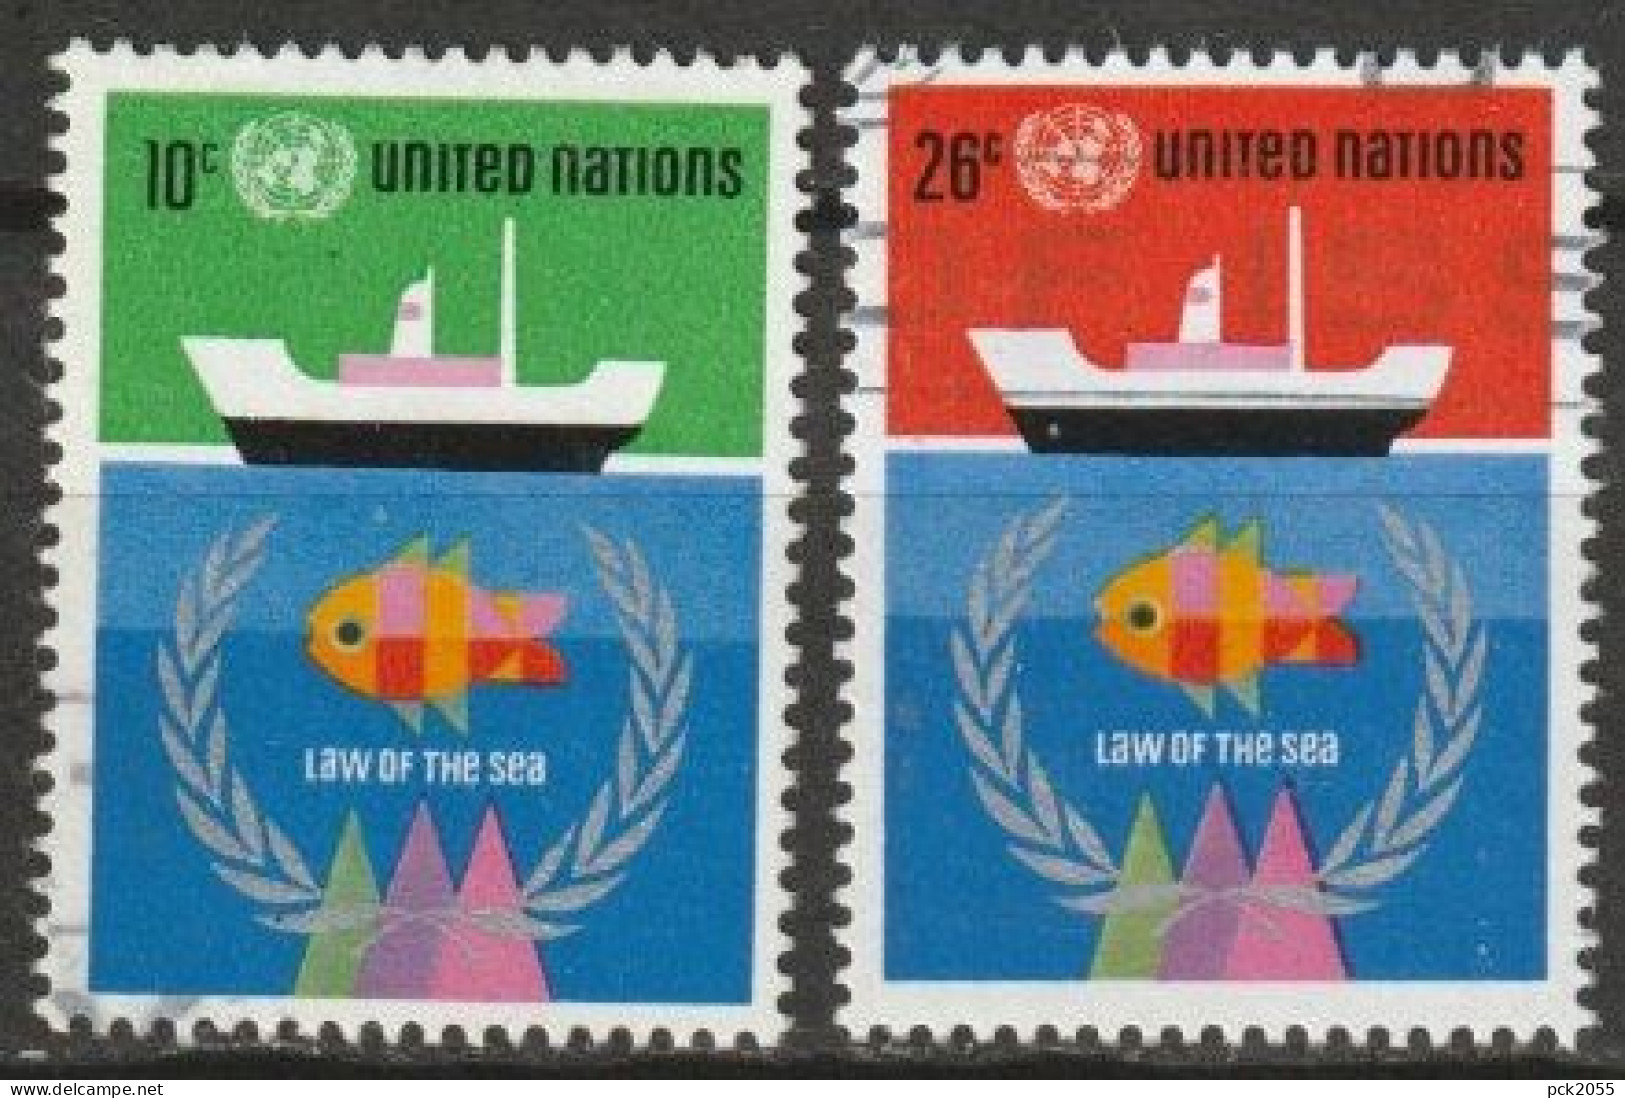 UNO New York 1974 MiNr.277 - 278 O Gestempelt Seerechtskonferenz Der UNO ( 4749 )günstige Versandkosten - Used Stamps